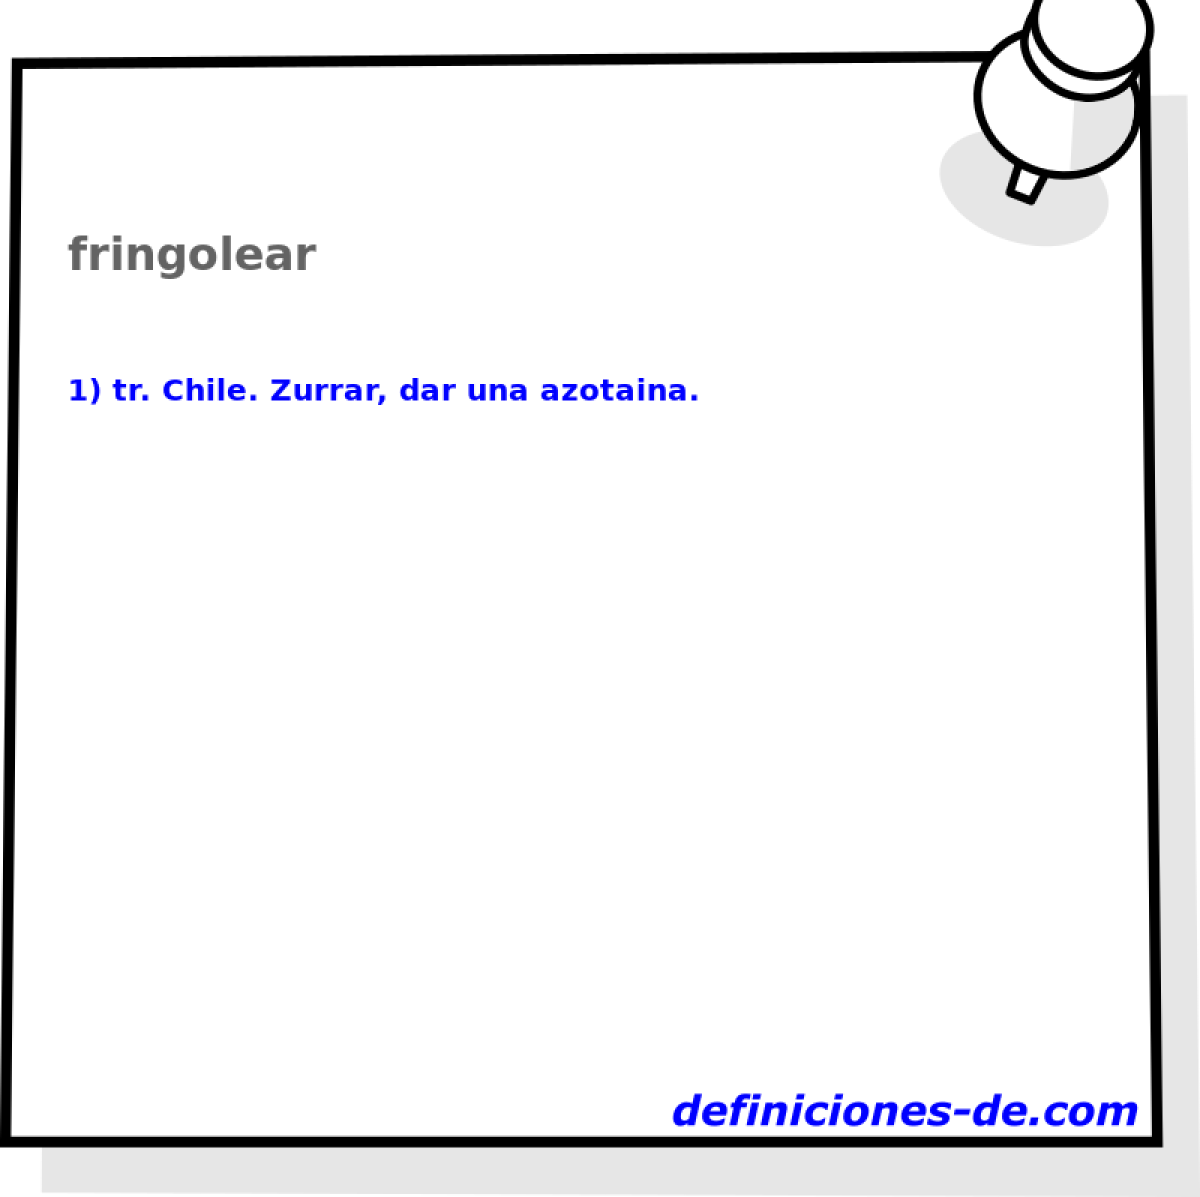 fringolear 